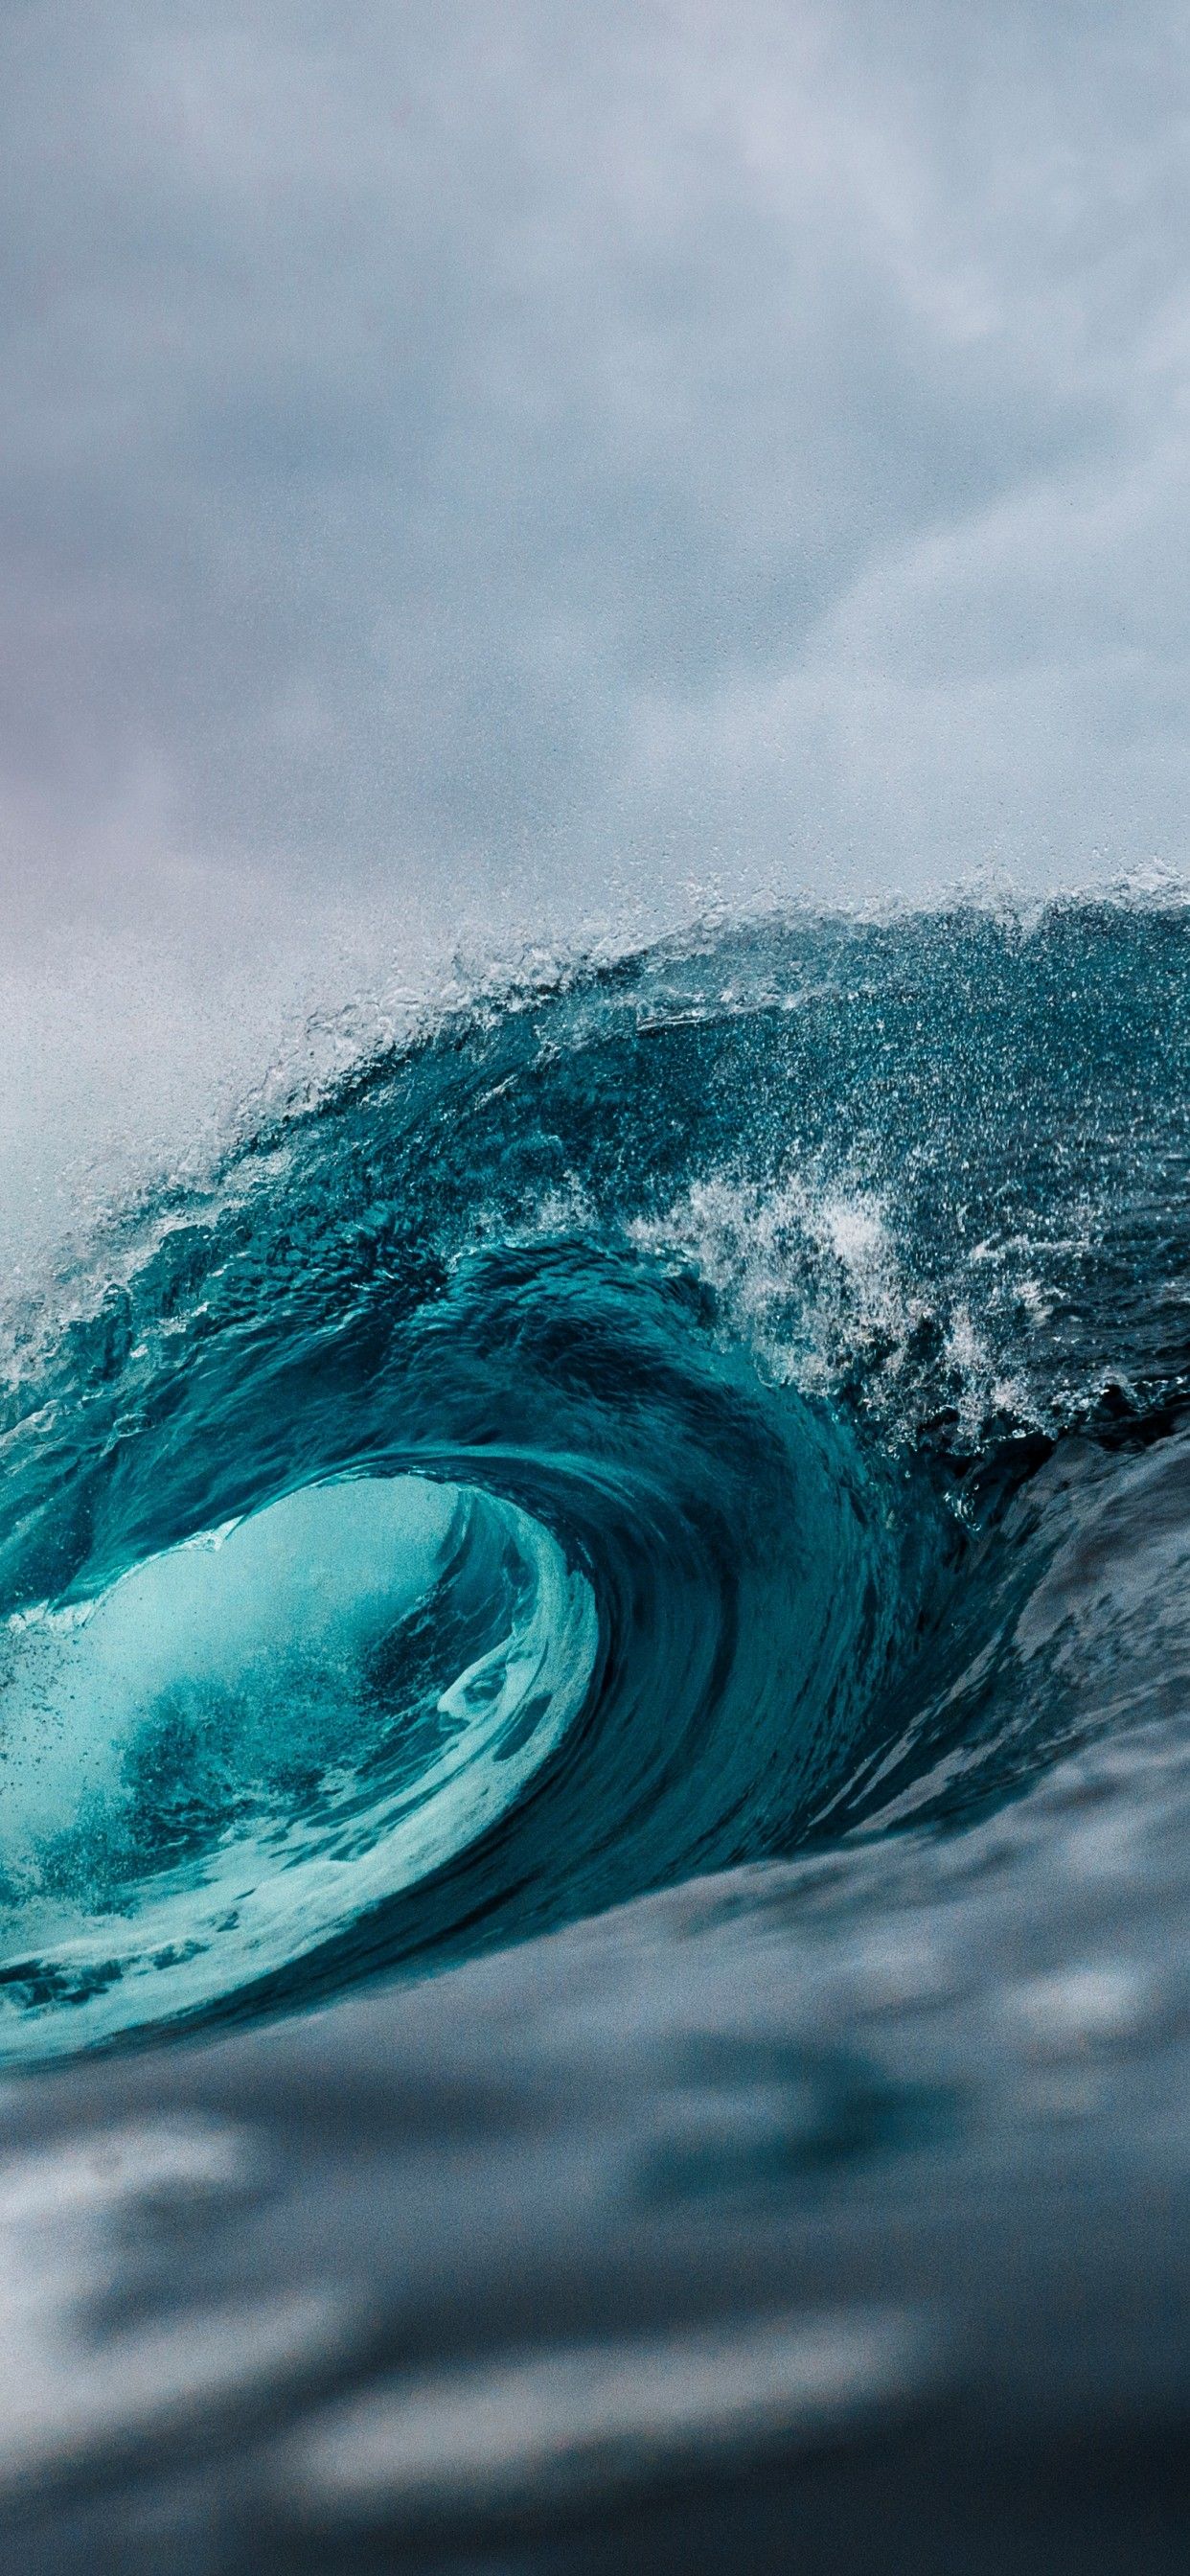 Waves Crashing iPhone wallpaper  iDrop News